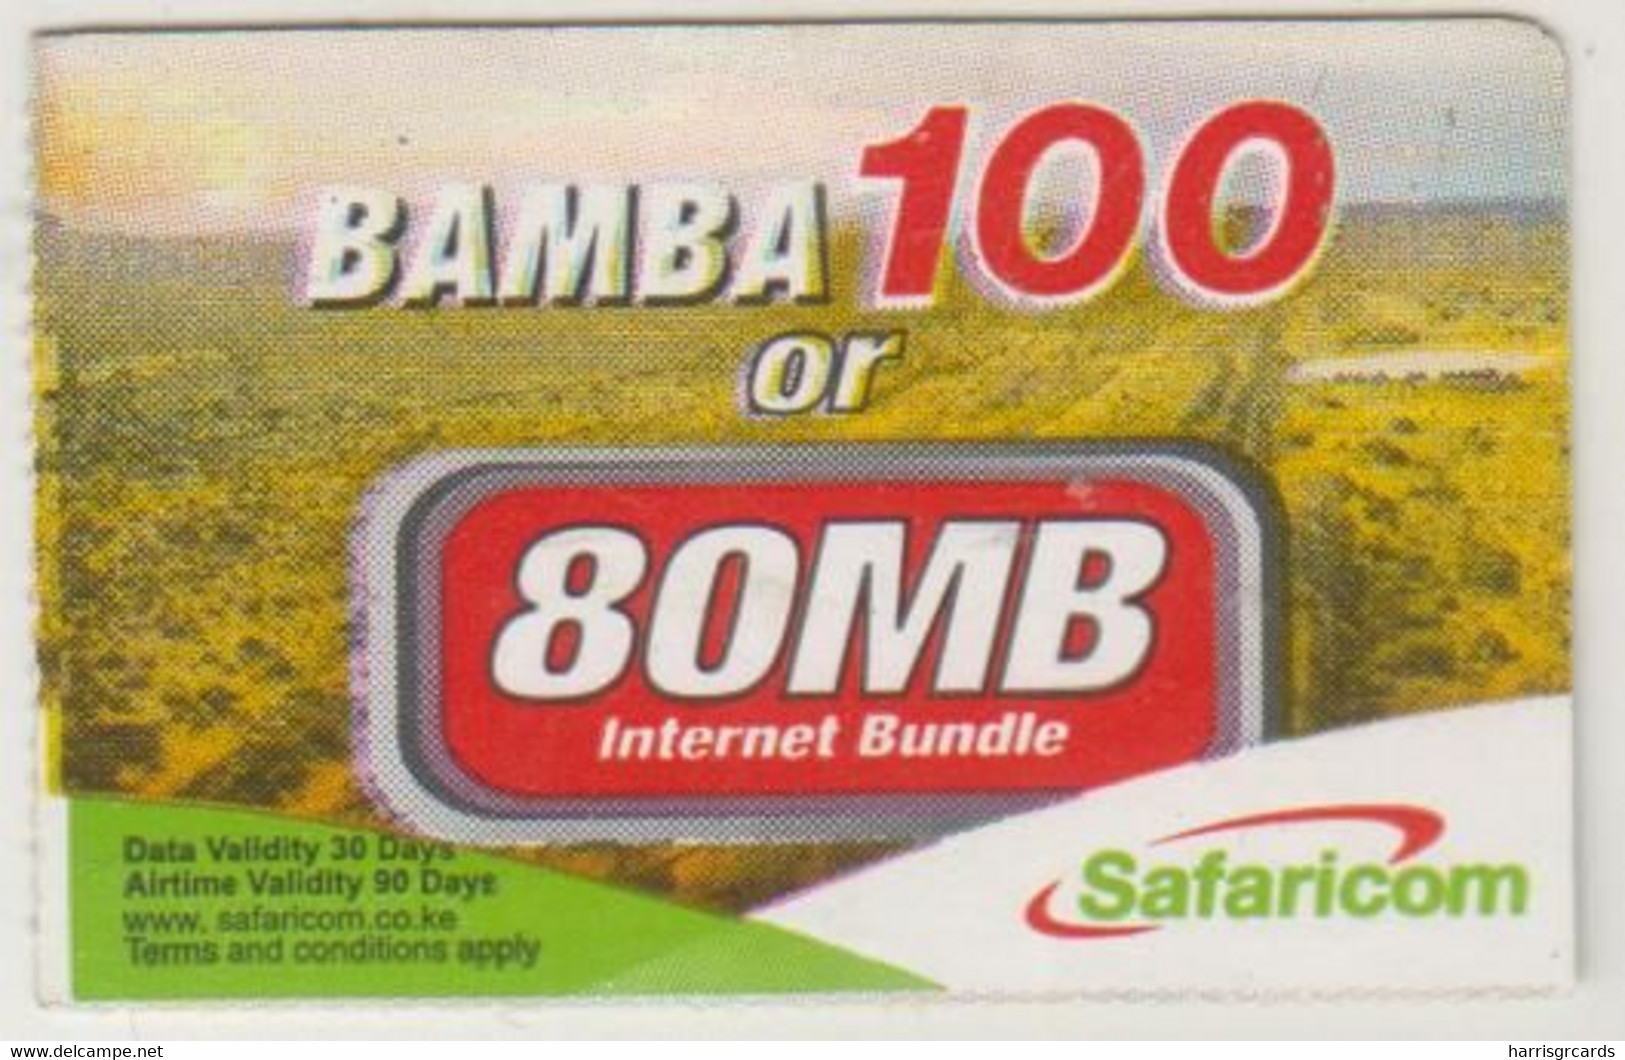 KENYA - BAMBA 100 (1/4 Size), Safaricom Card , Expiry Date:15/02/2015, Used - Kenia